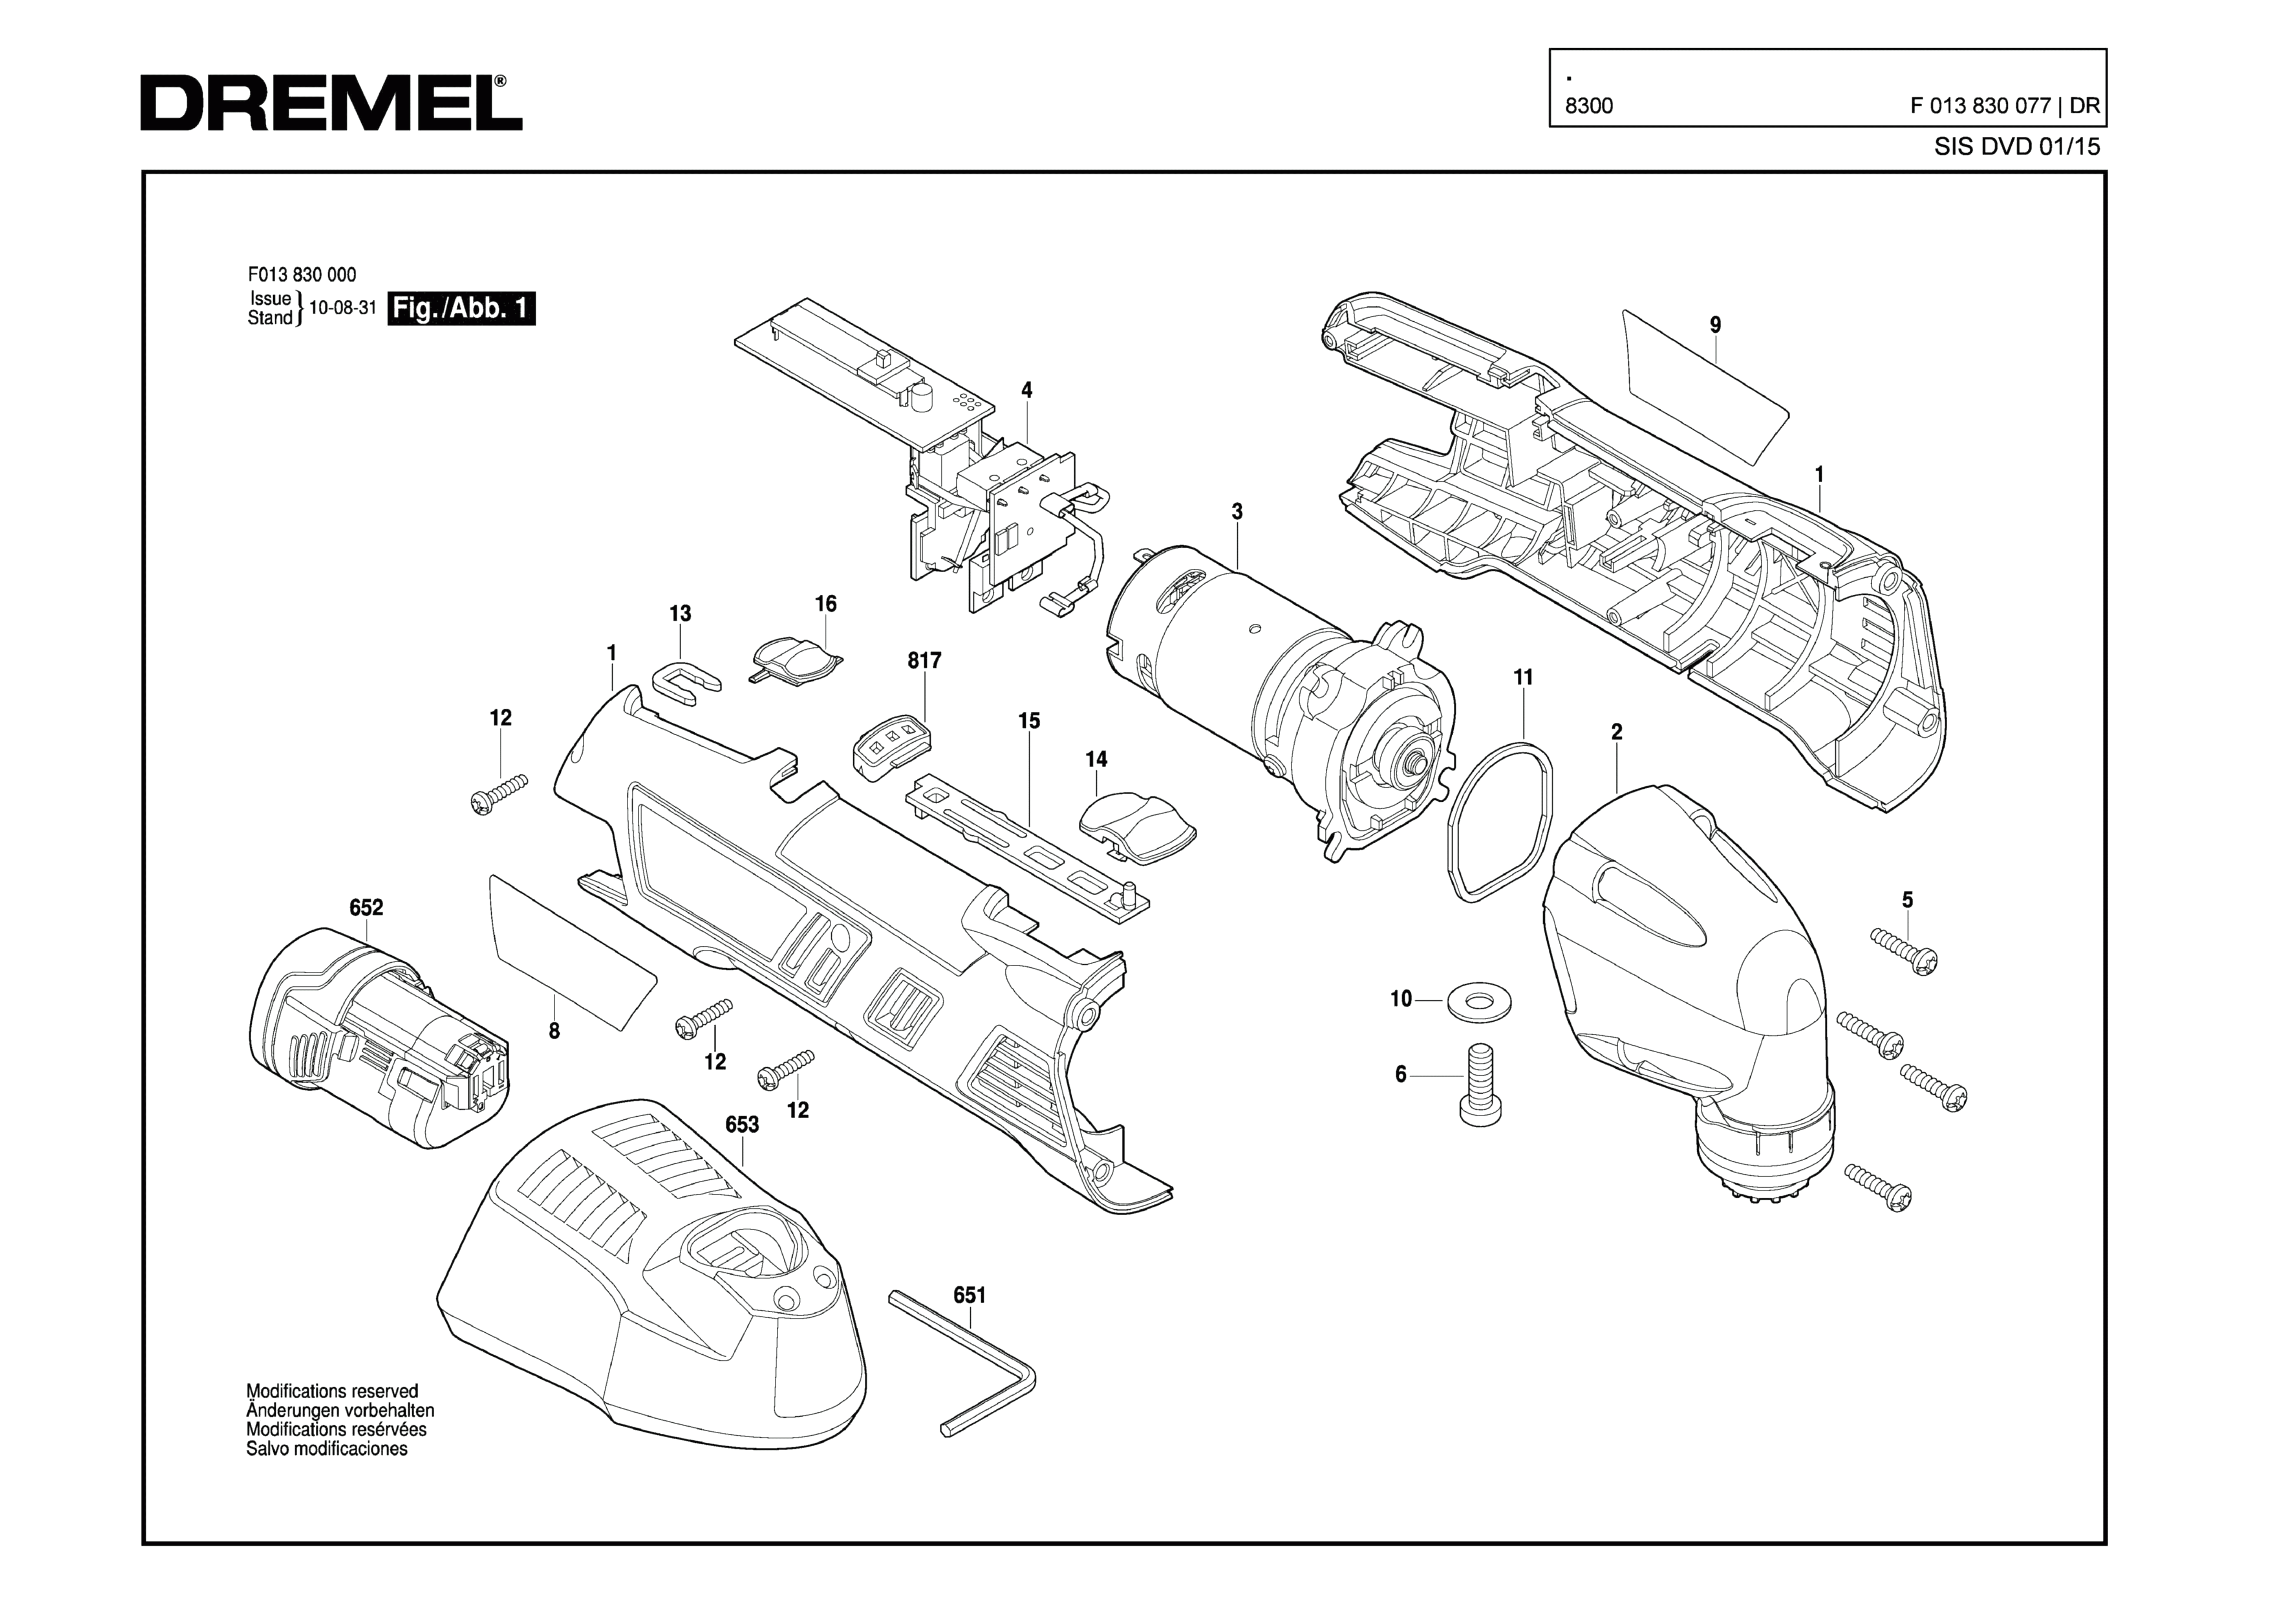 Шлифовальная машина Dremel 8300 (ТИП F013830077)